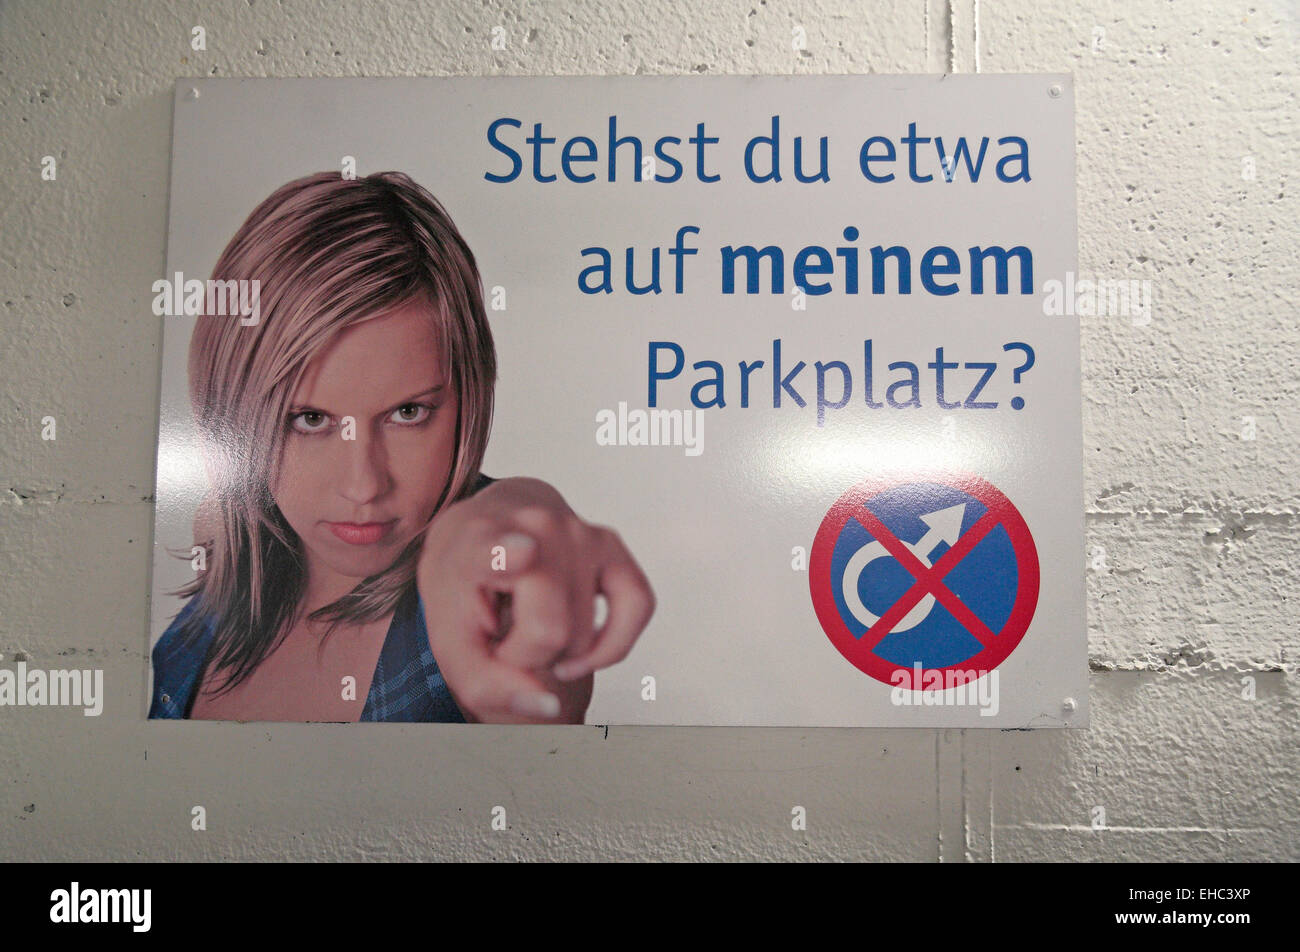 Melden Sie sich im Inneren Parkplatz Warnung Männer nicht an stellen Frauen vorbehalten, Aachen, Deutschland parken. Stockfoto